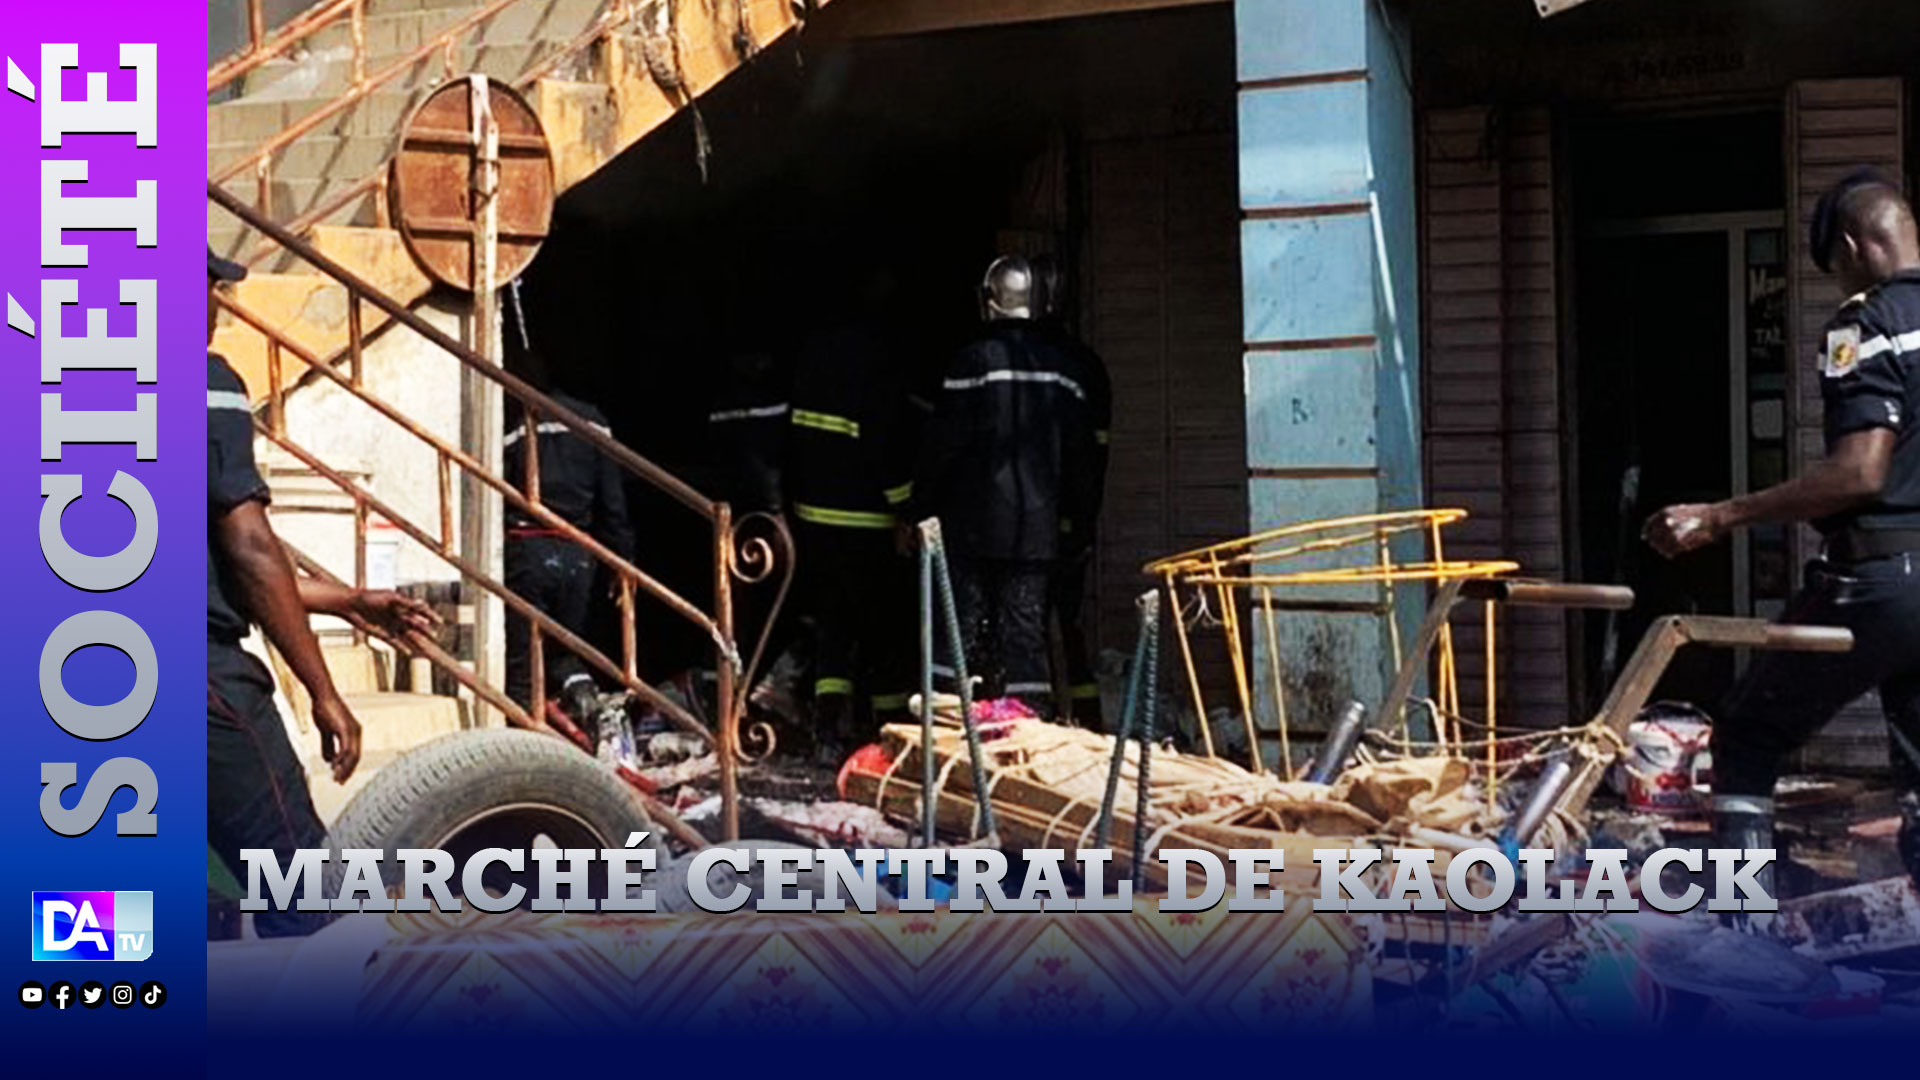 Marché central de Kaolack: Une quincaillerie prend feu et provoque une explosion